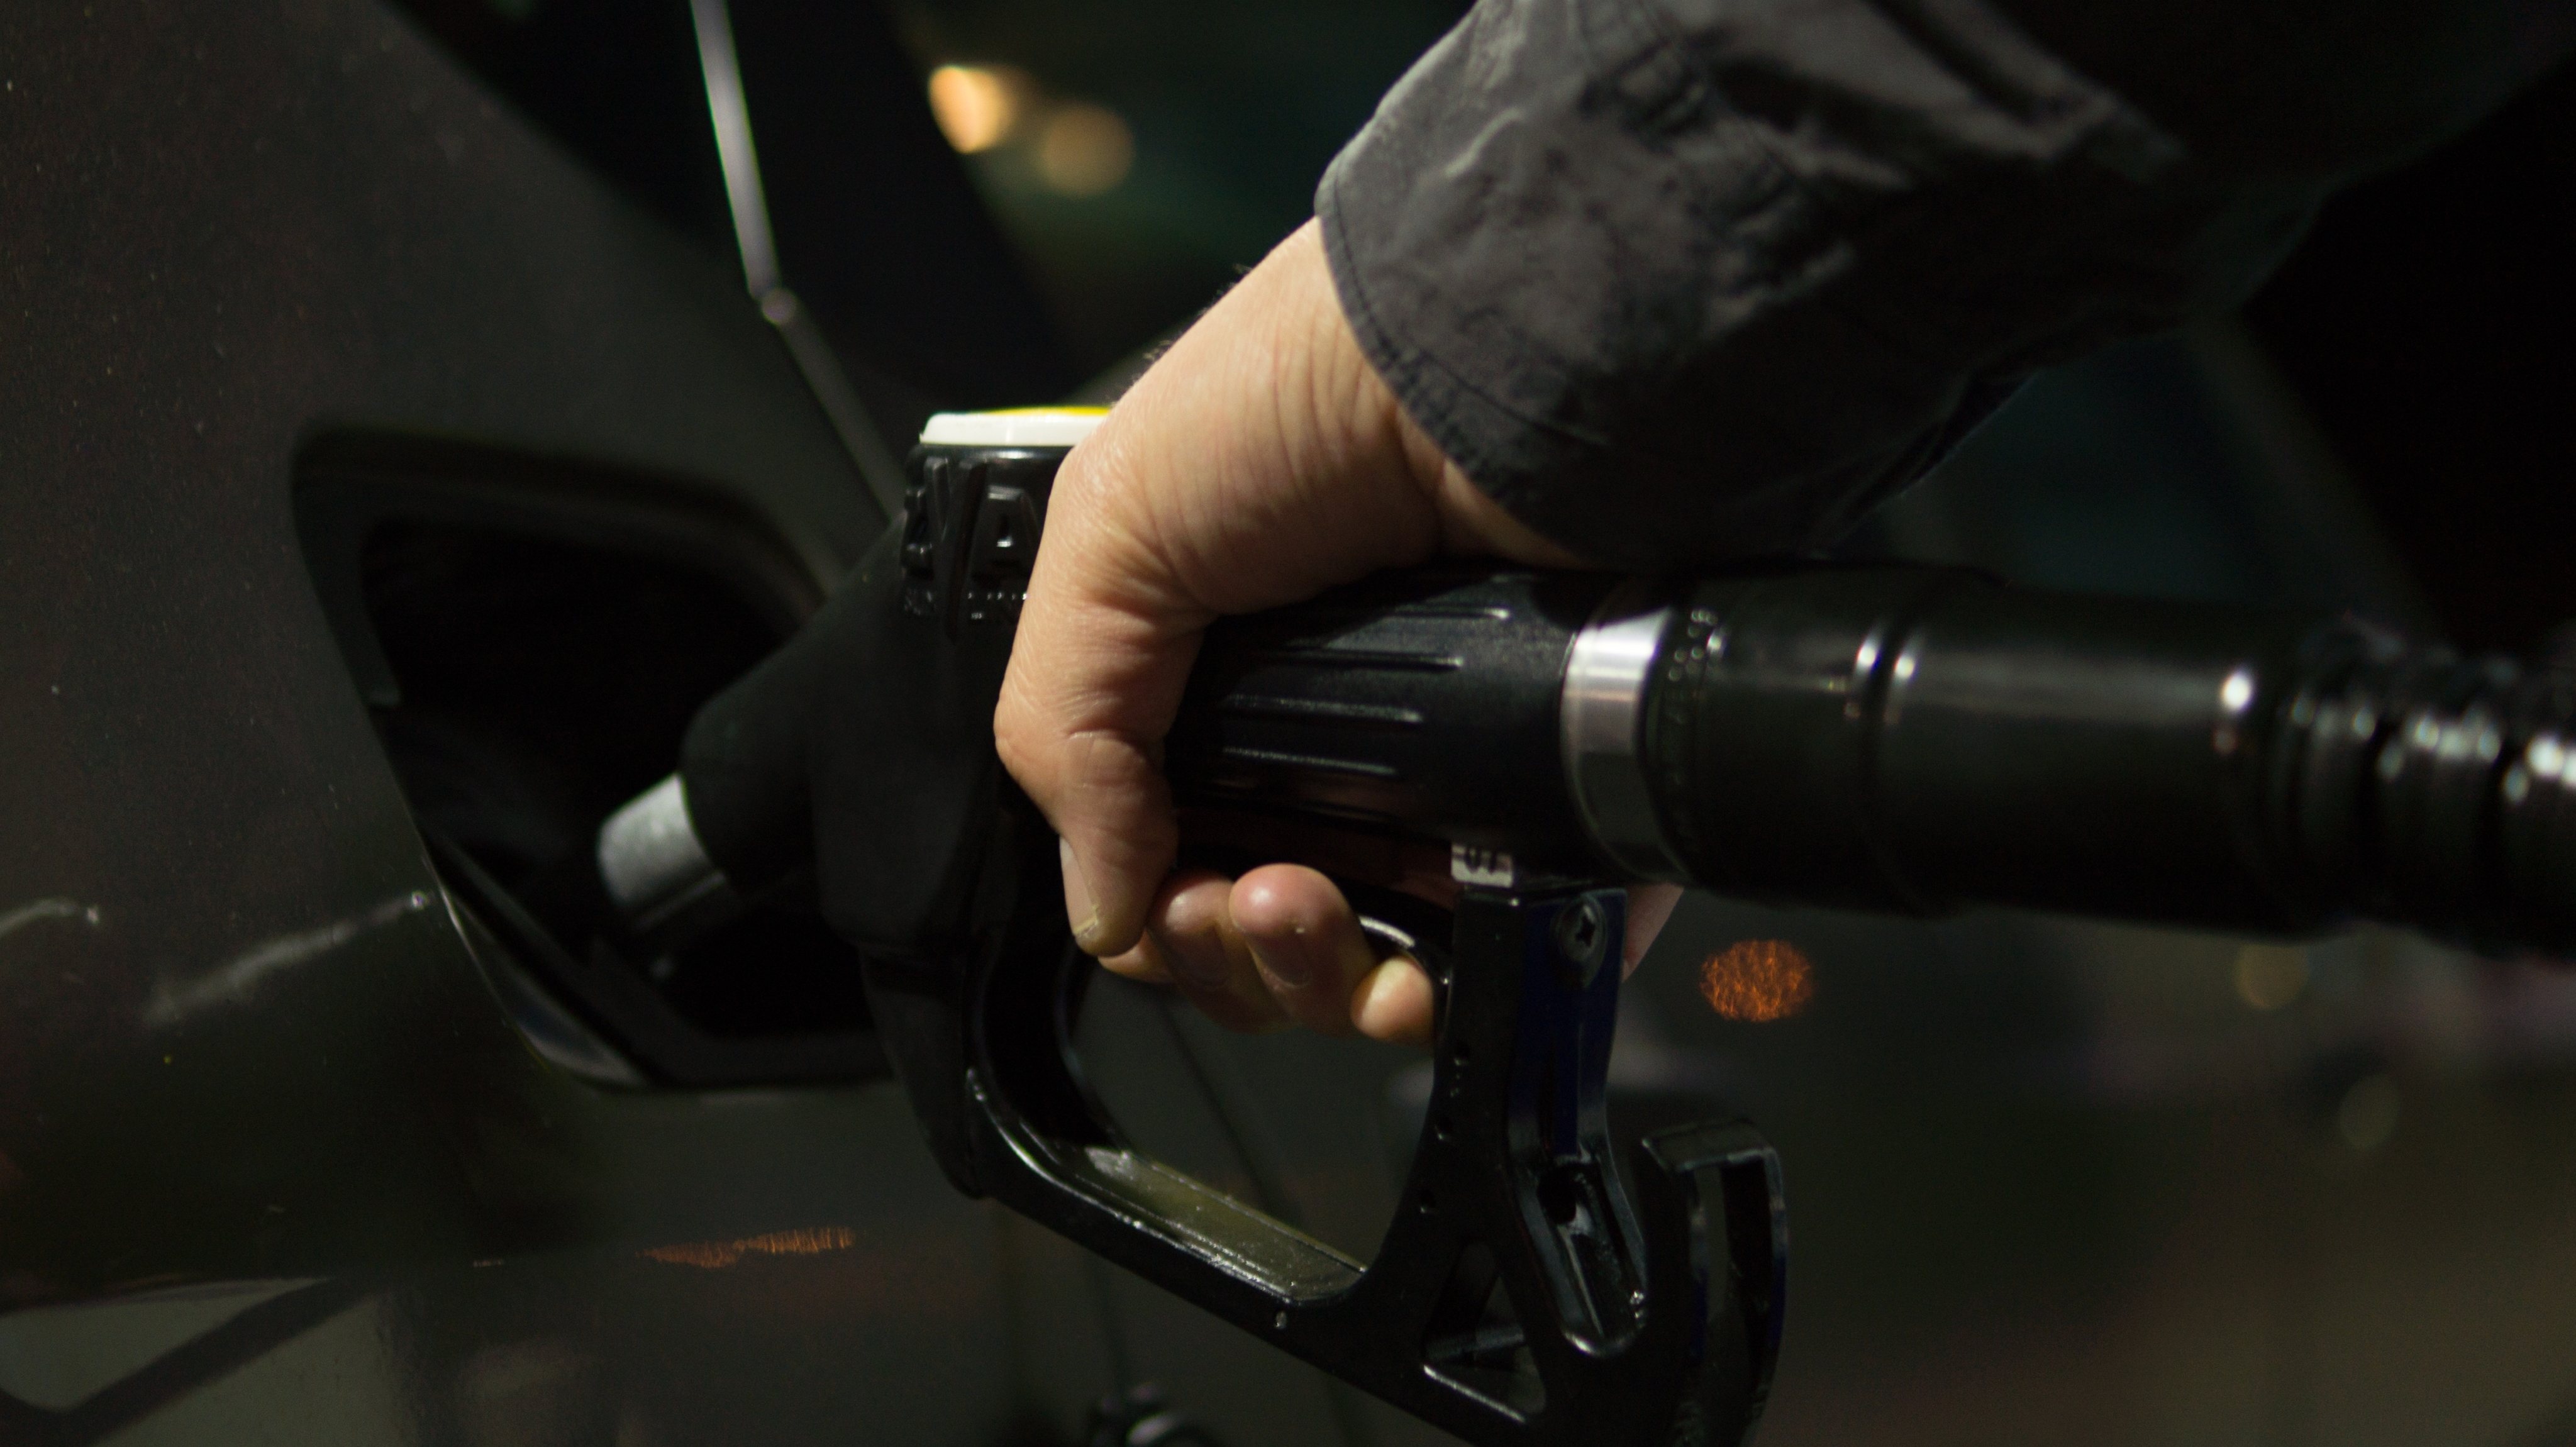 O Autovoucher foi o programa criado para compensar parcialmente os consumidores pelo aumento do preço dos combustíveis